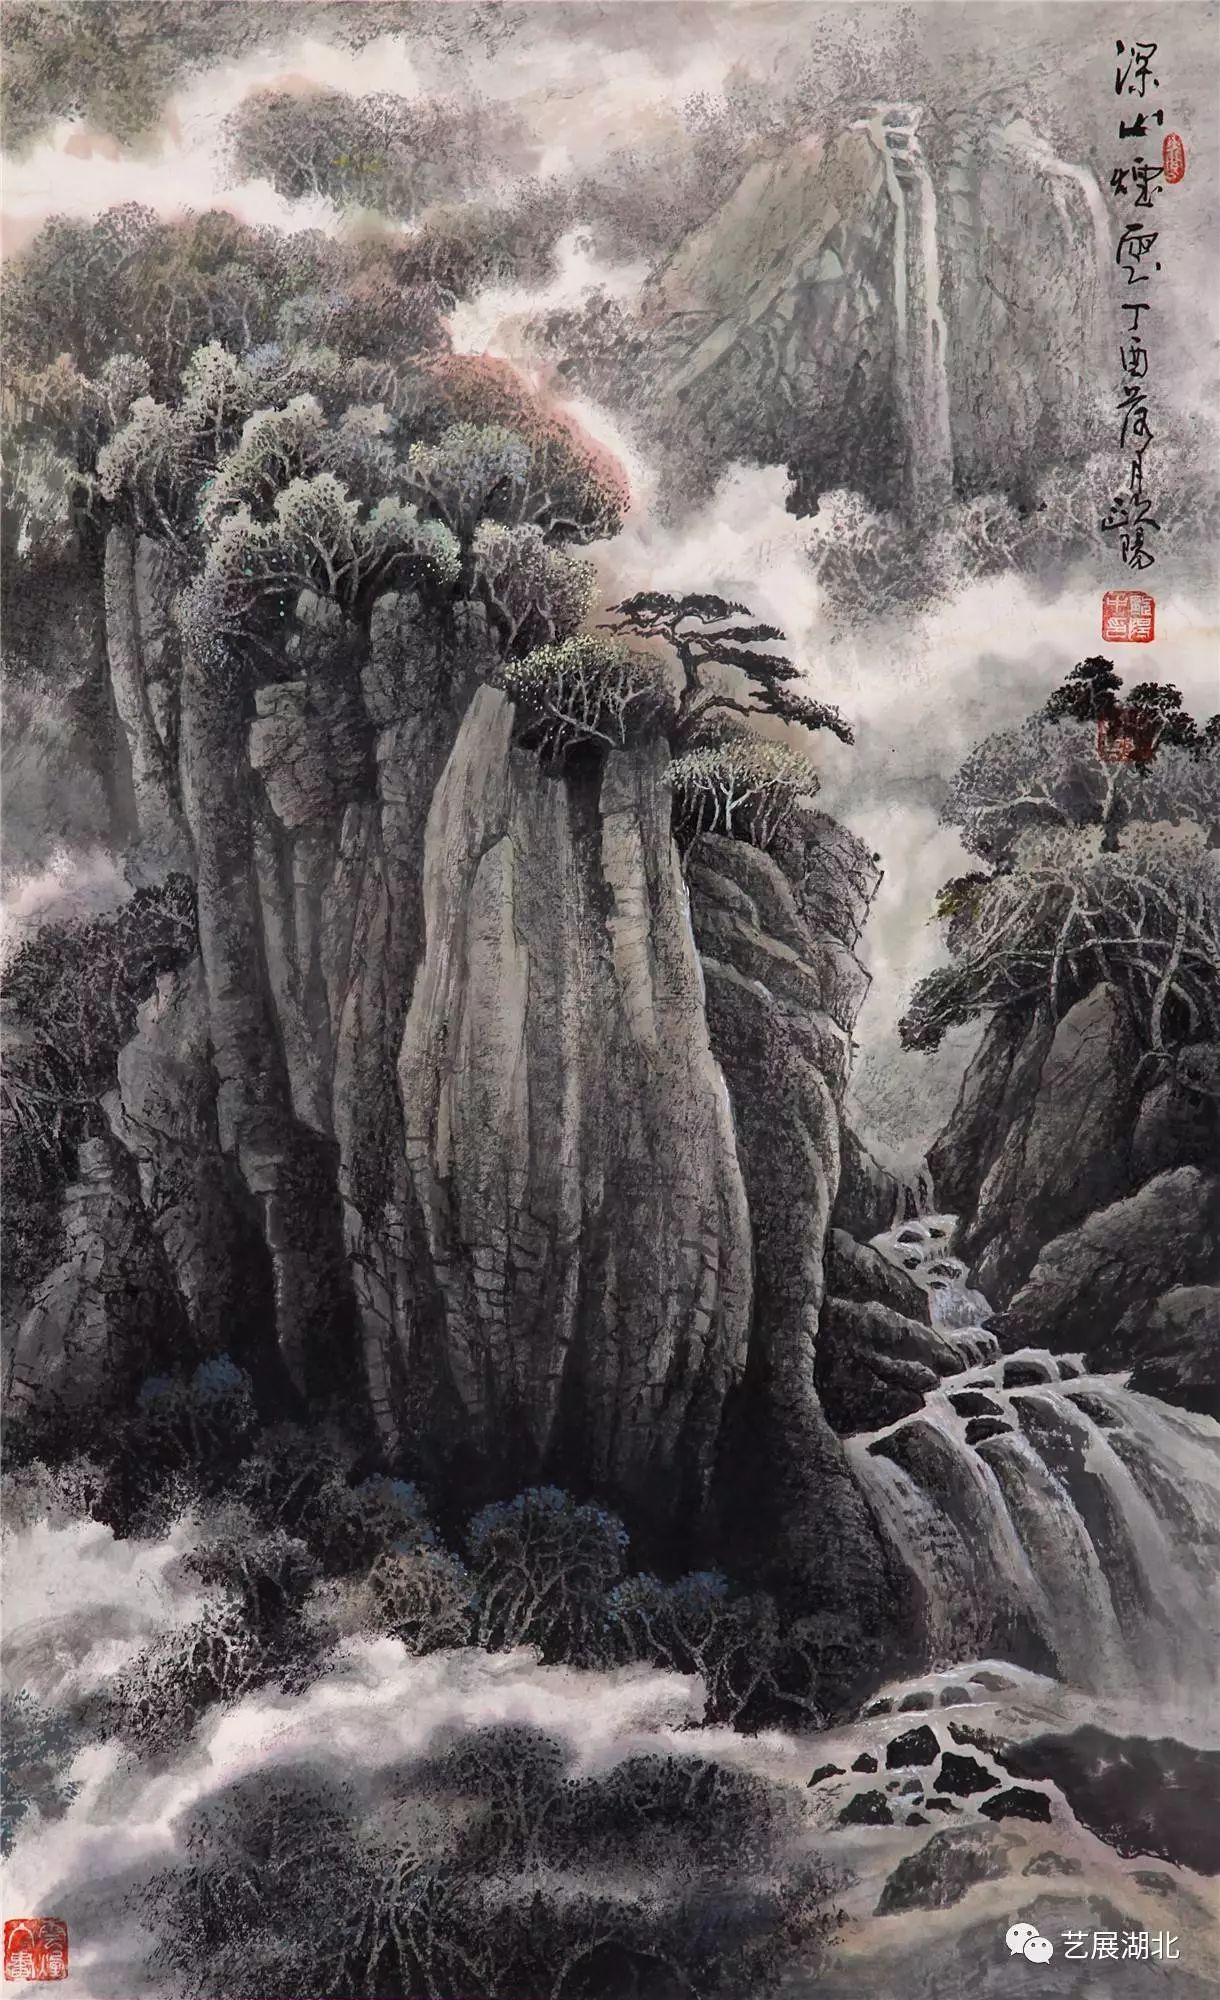 欧阳忠,1 945年出生于山东济南,擅长山水亦兼工笔动物花鸟.